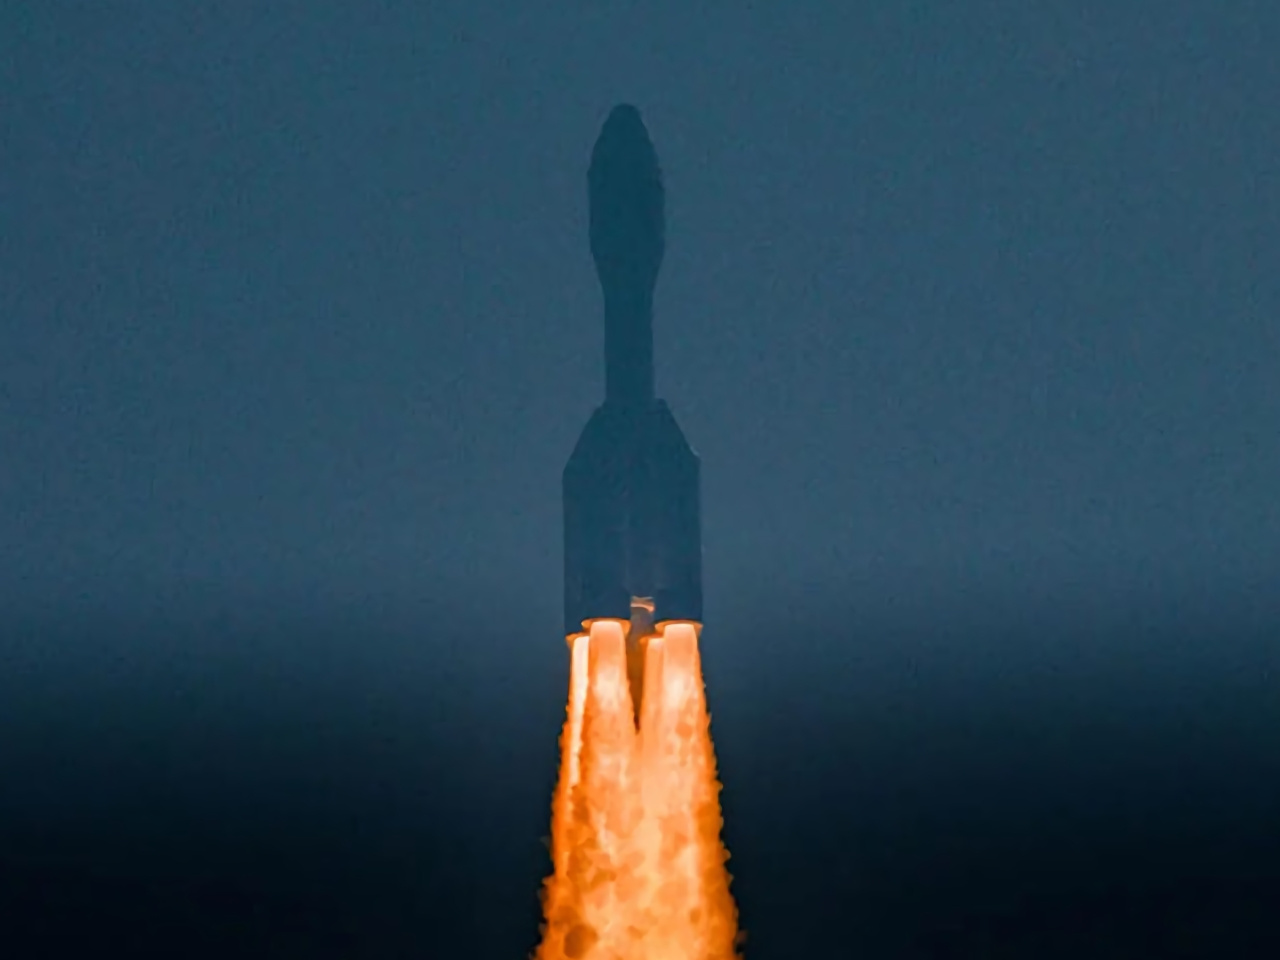 中国民間企業Orienspaceロケット、海上船からのデビュー打ち上げに成功